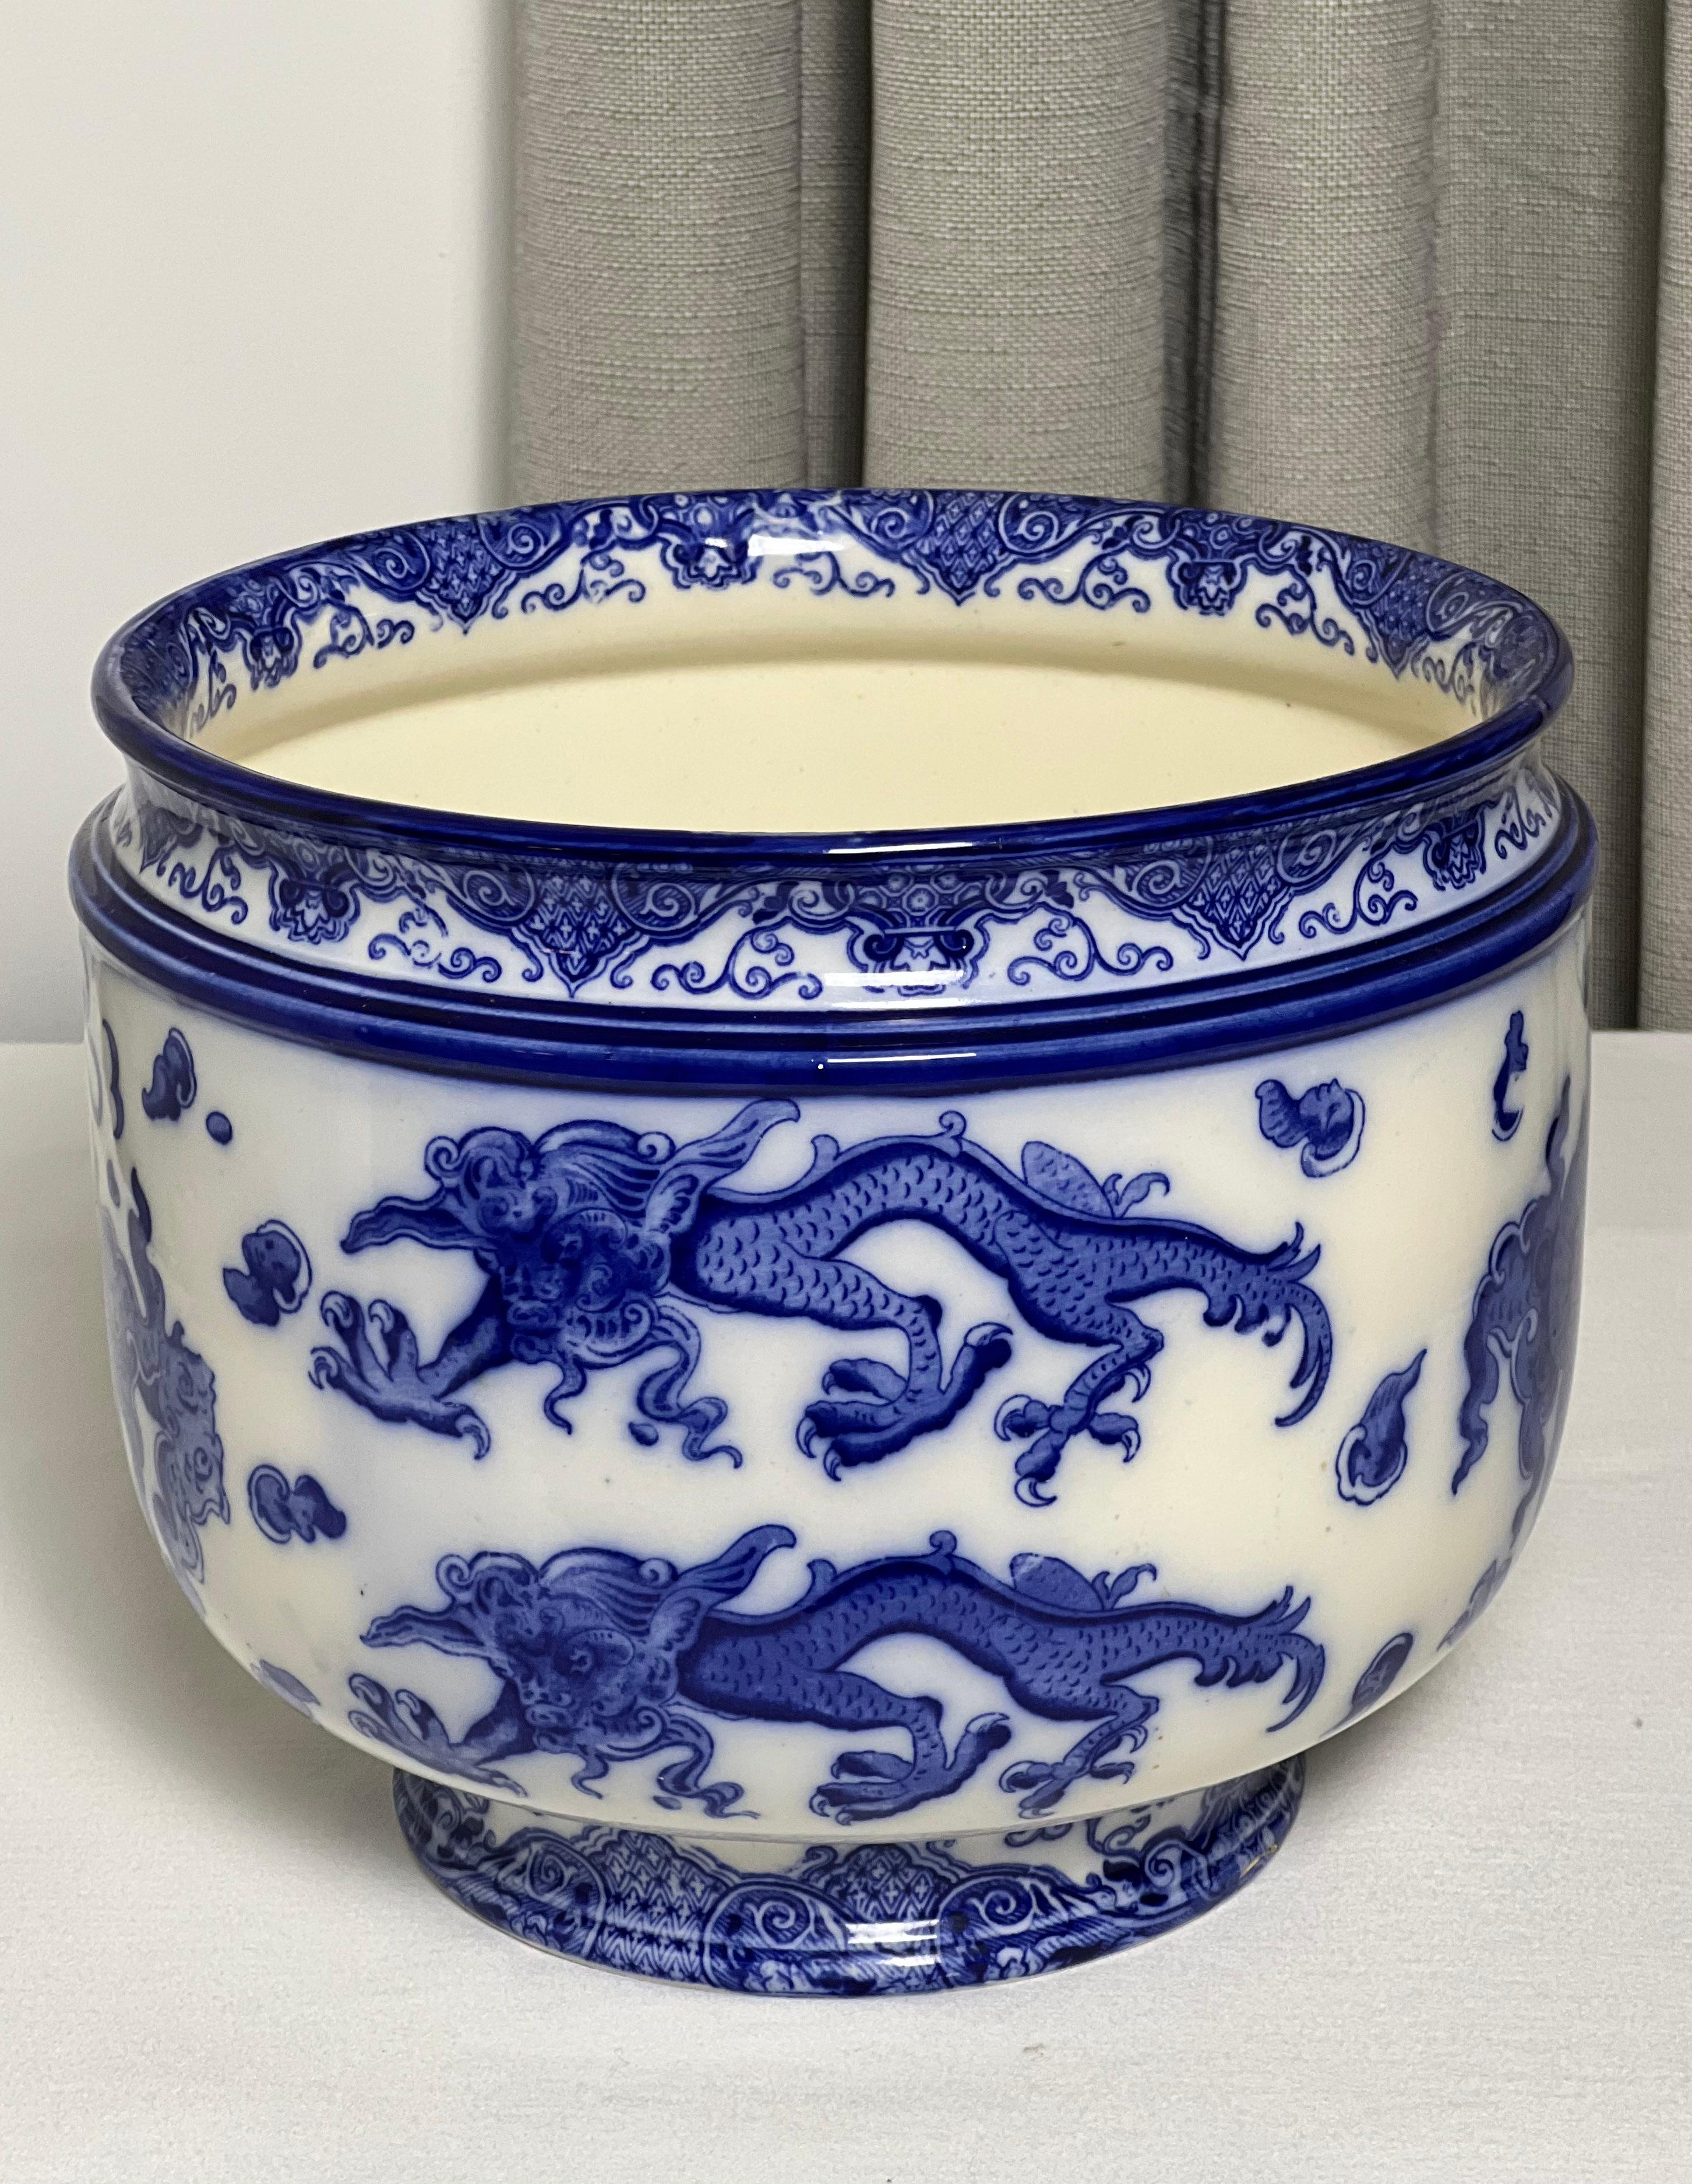 Rare jardinière en porcelaine Royal Doulton à motif 'Oyama', vers 1910.

Jardinière à fleurs bleues avec une scène de chinoiserie représentant des dragons célestes chassant la perle de la sagesse. Il y a une petite réparation de fissure près de la